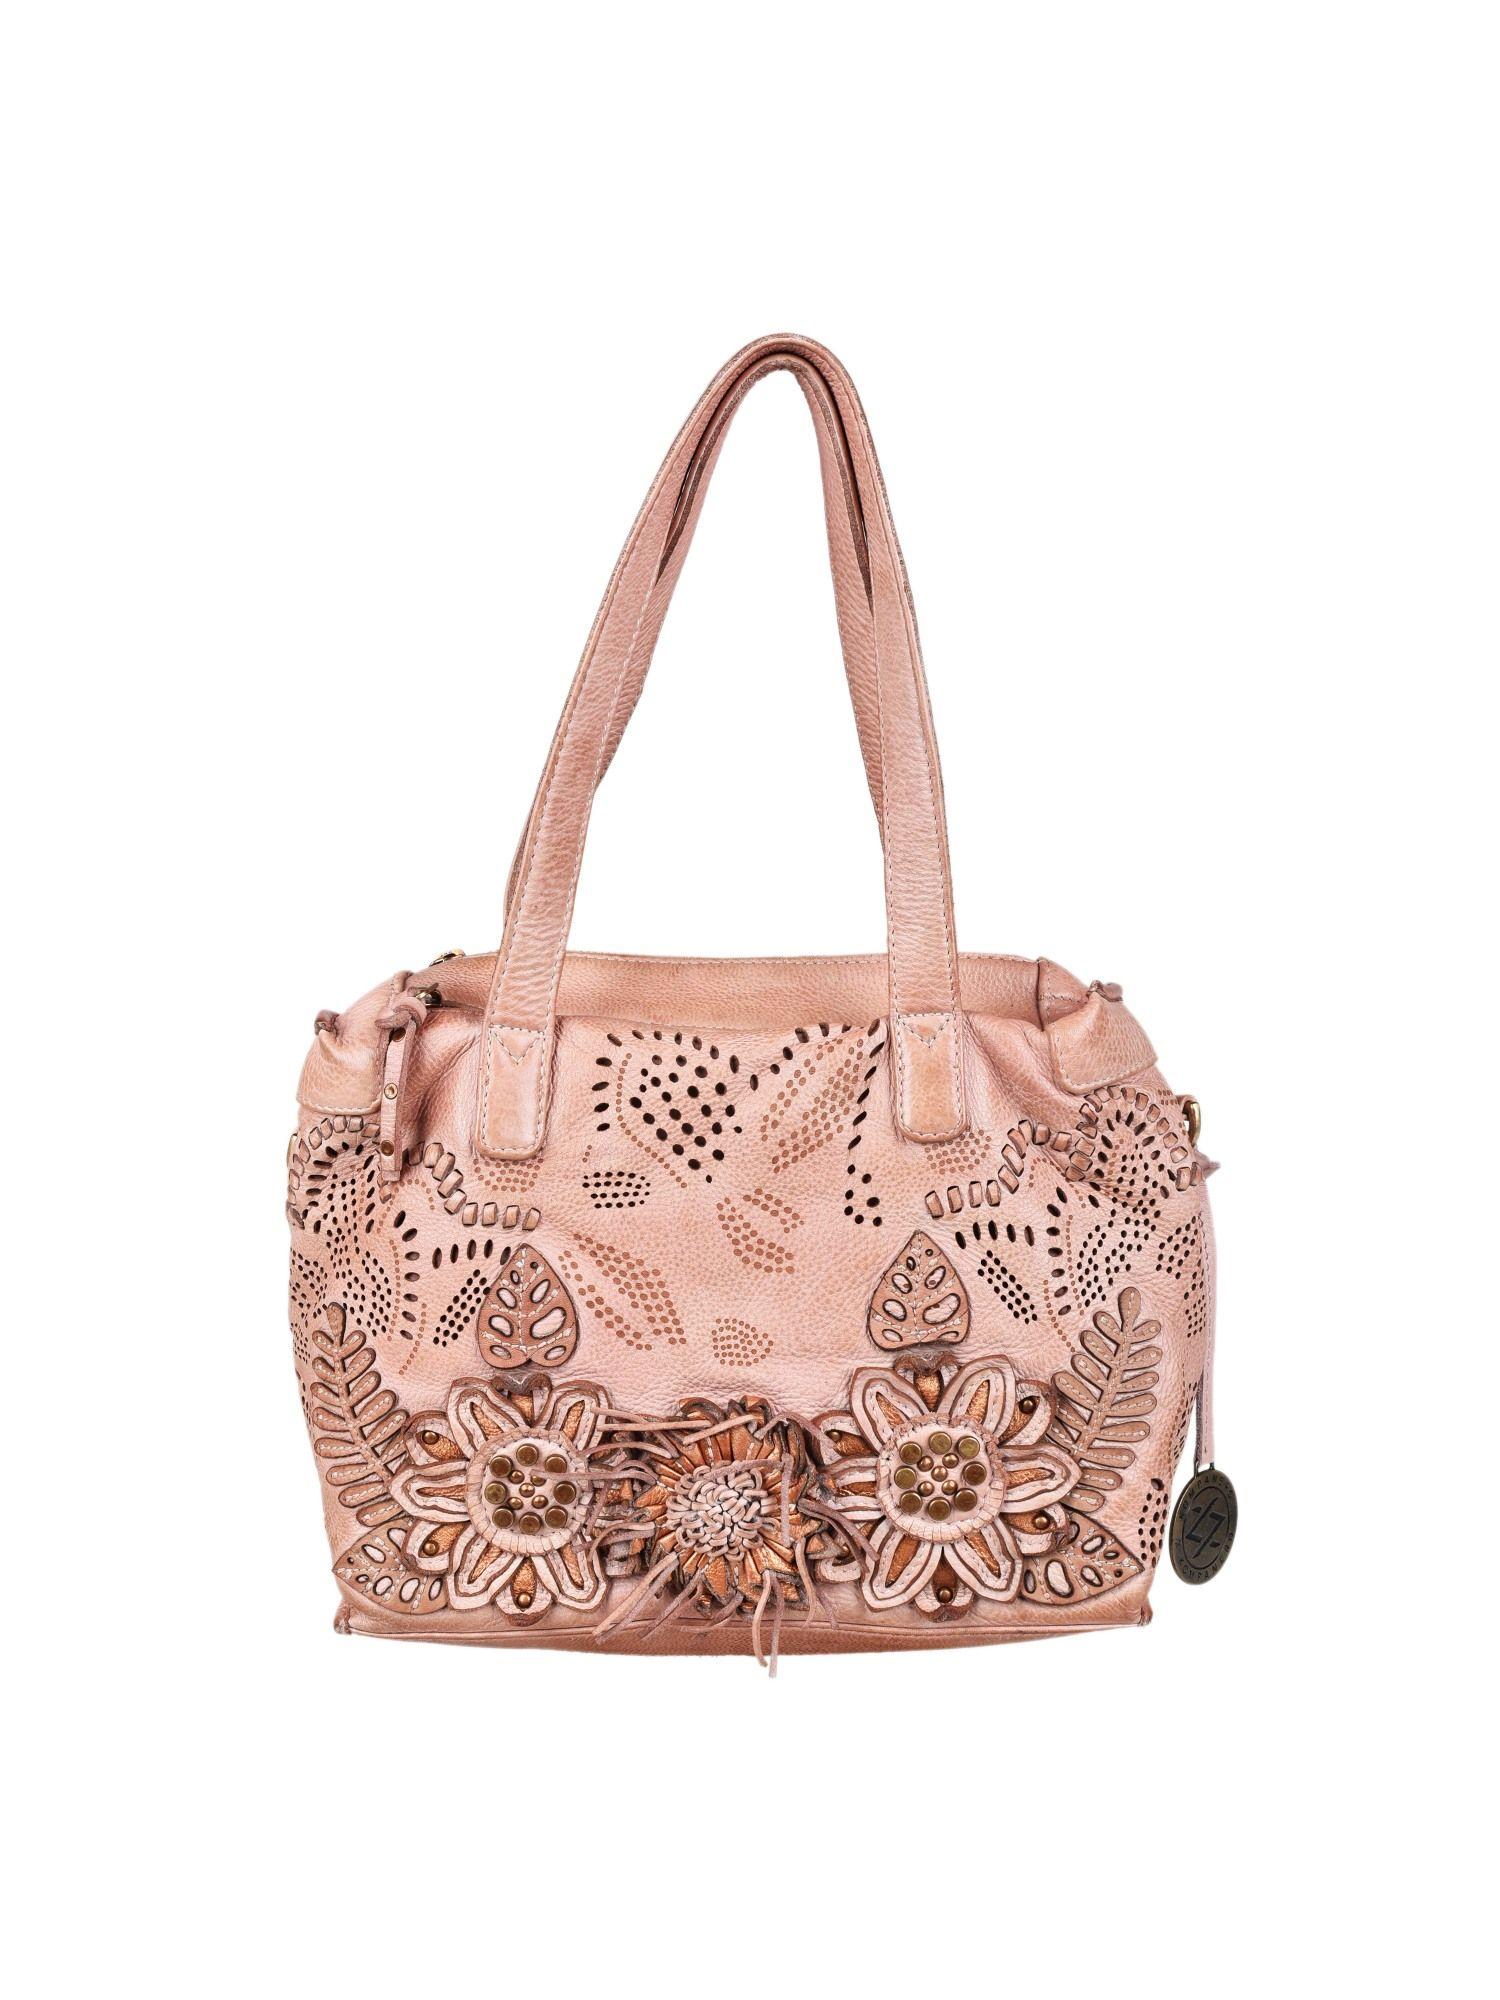 gardenia - the medium handbag